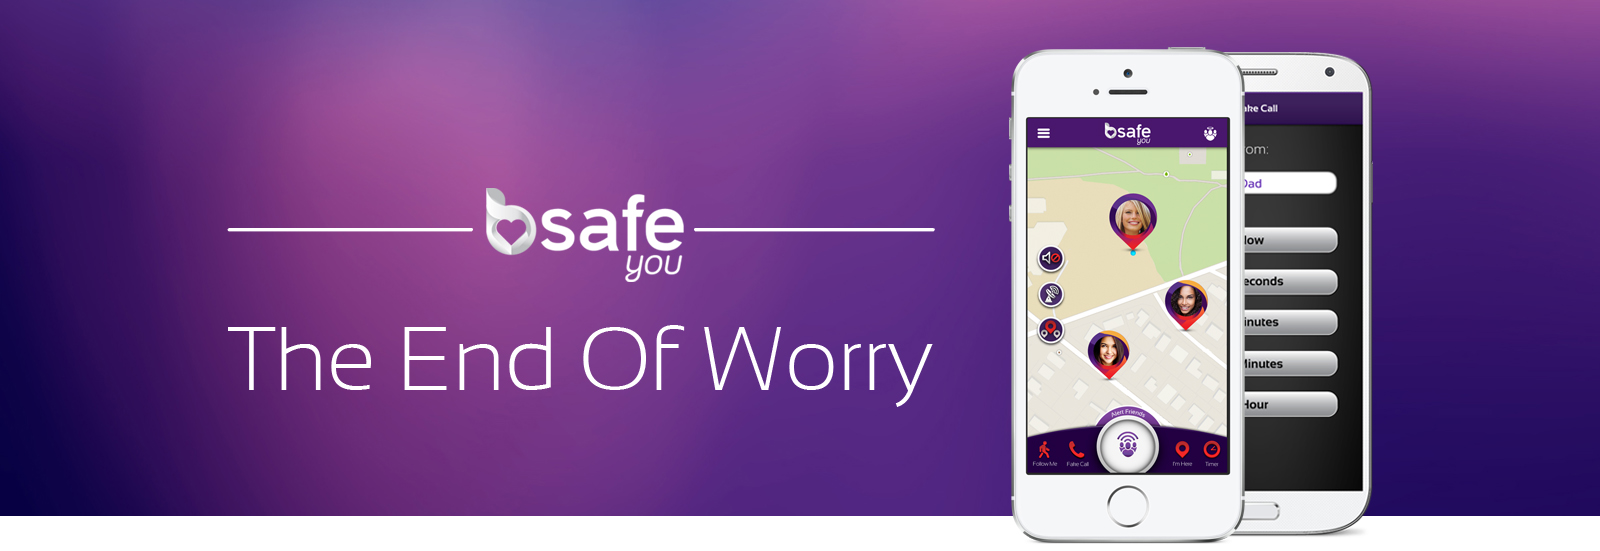 Safety App Review - bsafe app screenshot